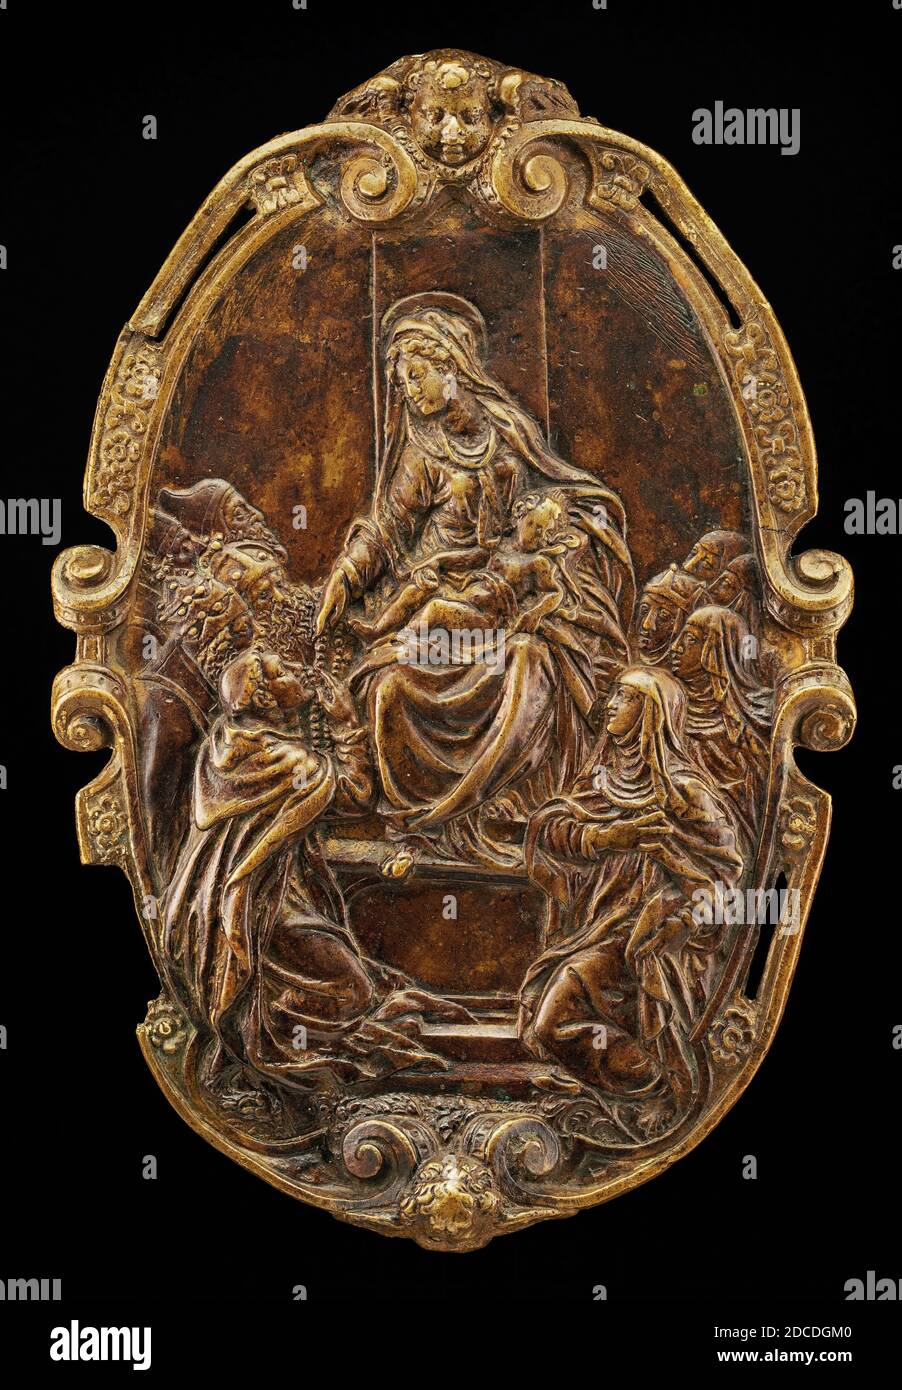 Artiste anonyme, (sculpteur), Jacopo Sansovino, (artiste apparenté), Florentine-Venetian, 1486 - 1570, la Madonna du Rosaire, milieu du XVIe siècle, bronze, total (ovale): 14.8 x 9.9 cm (5 13/16 x 3 7/8 po.) poids brut: 216 gr Banque D'Images